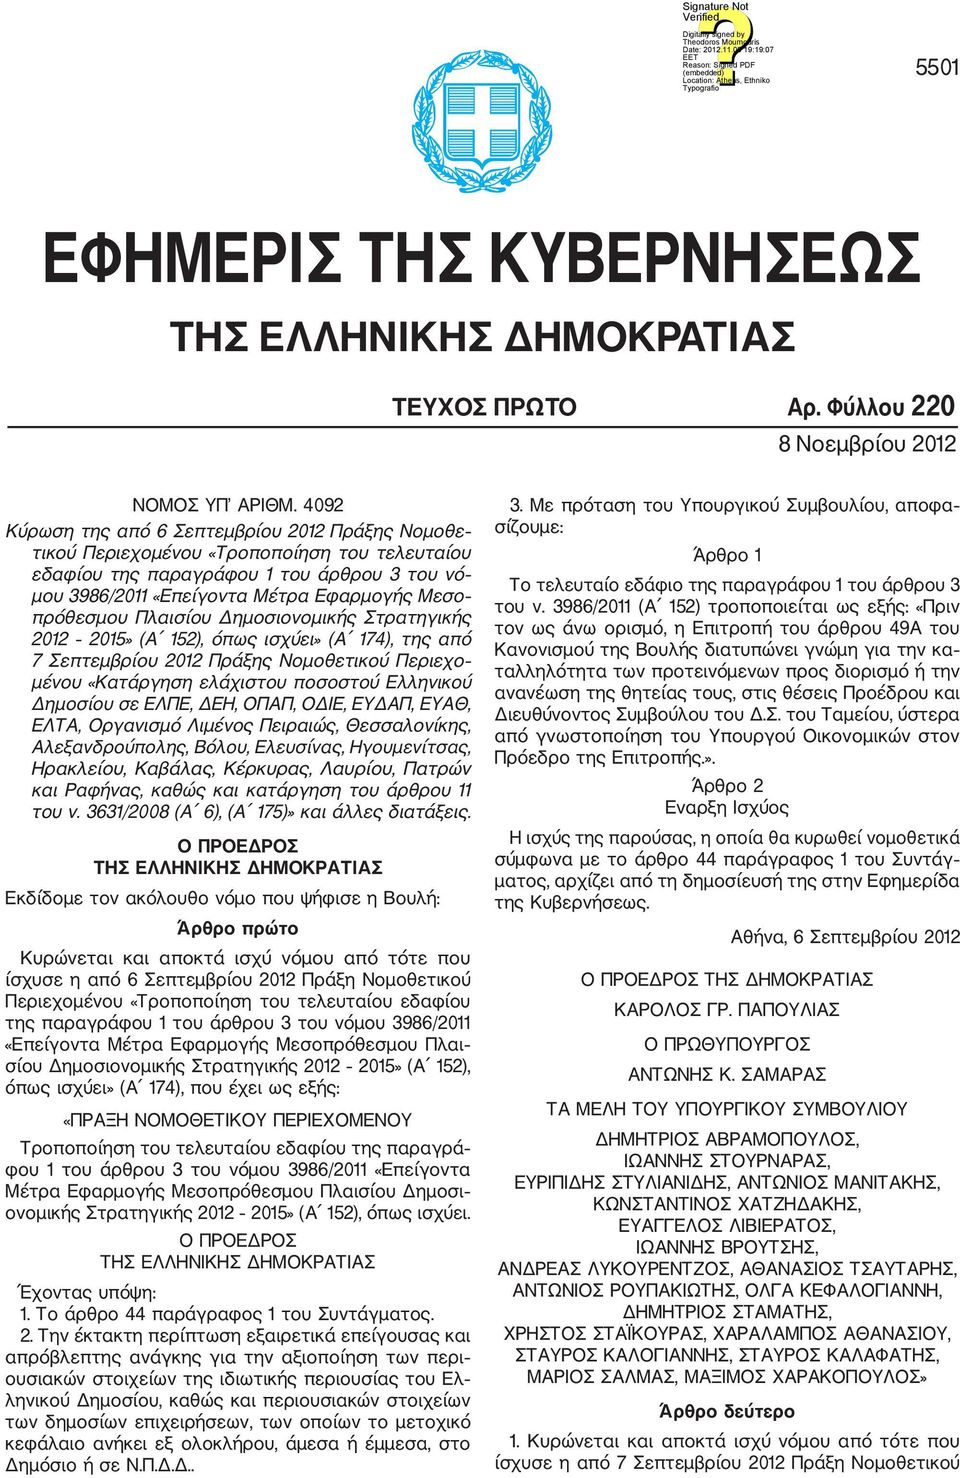 πρόθεσμου Πλαισίου Δημοσιονομικής Στρατηγικής 2012 2015» (Α 152), όπως ισχύει» (Α 174), της από 7 Σεπτεμβρίου 2012 Πράξης Νομοθετικού Περιεχο μένου «Κατάργηση ελάχιστου ποσοστού Ελληνικού Δημοσίου σε